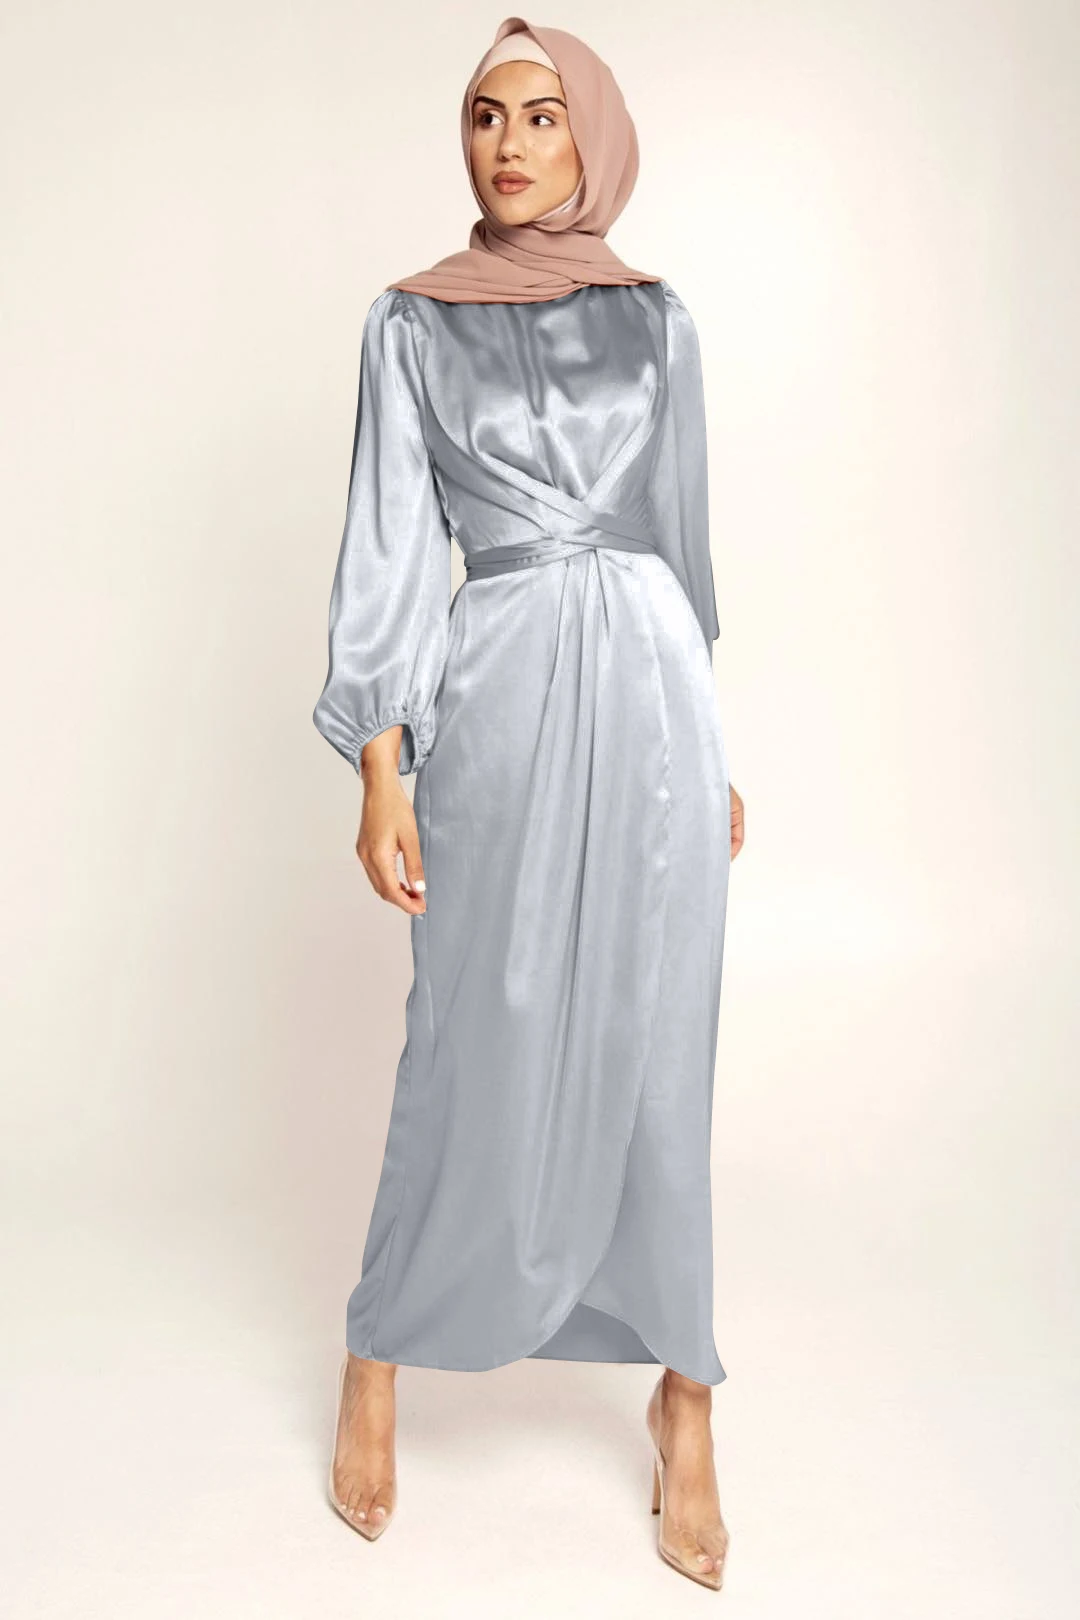 2020 New Fashion Satin Abaya Dubai Turkey Muslim Dress European